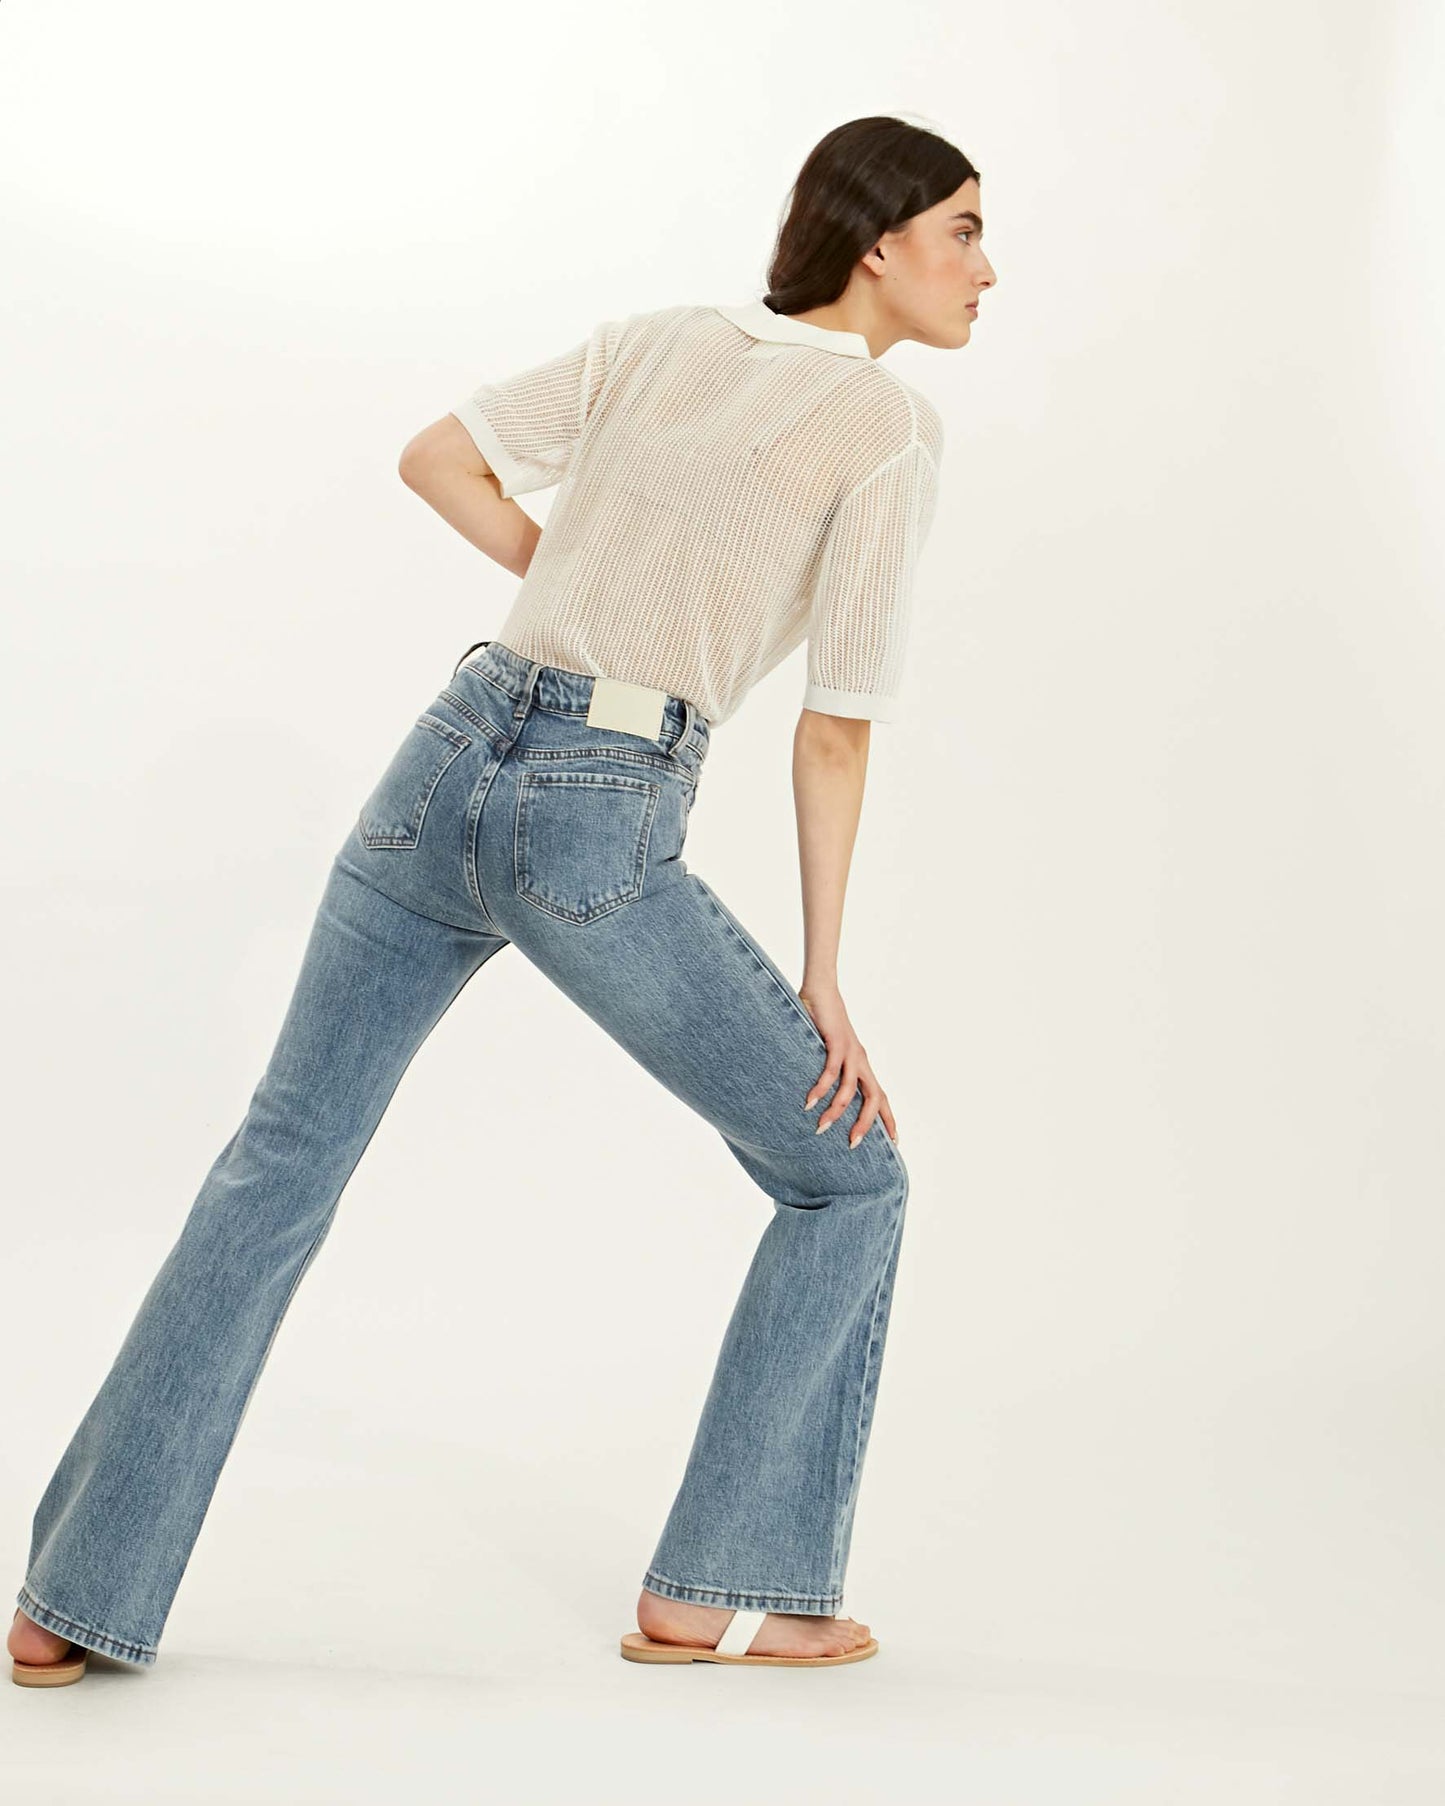 ג'ינס רחב במקומות הנכונים